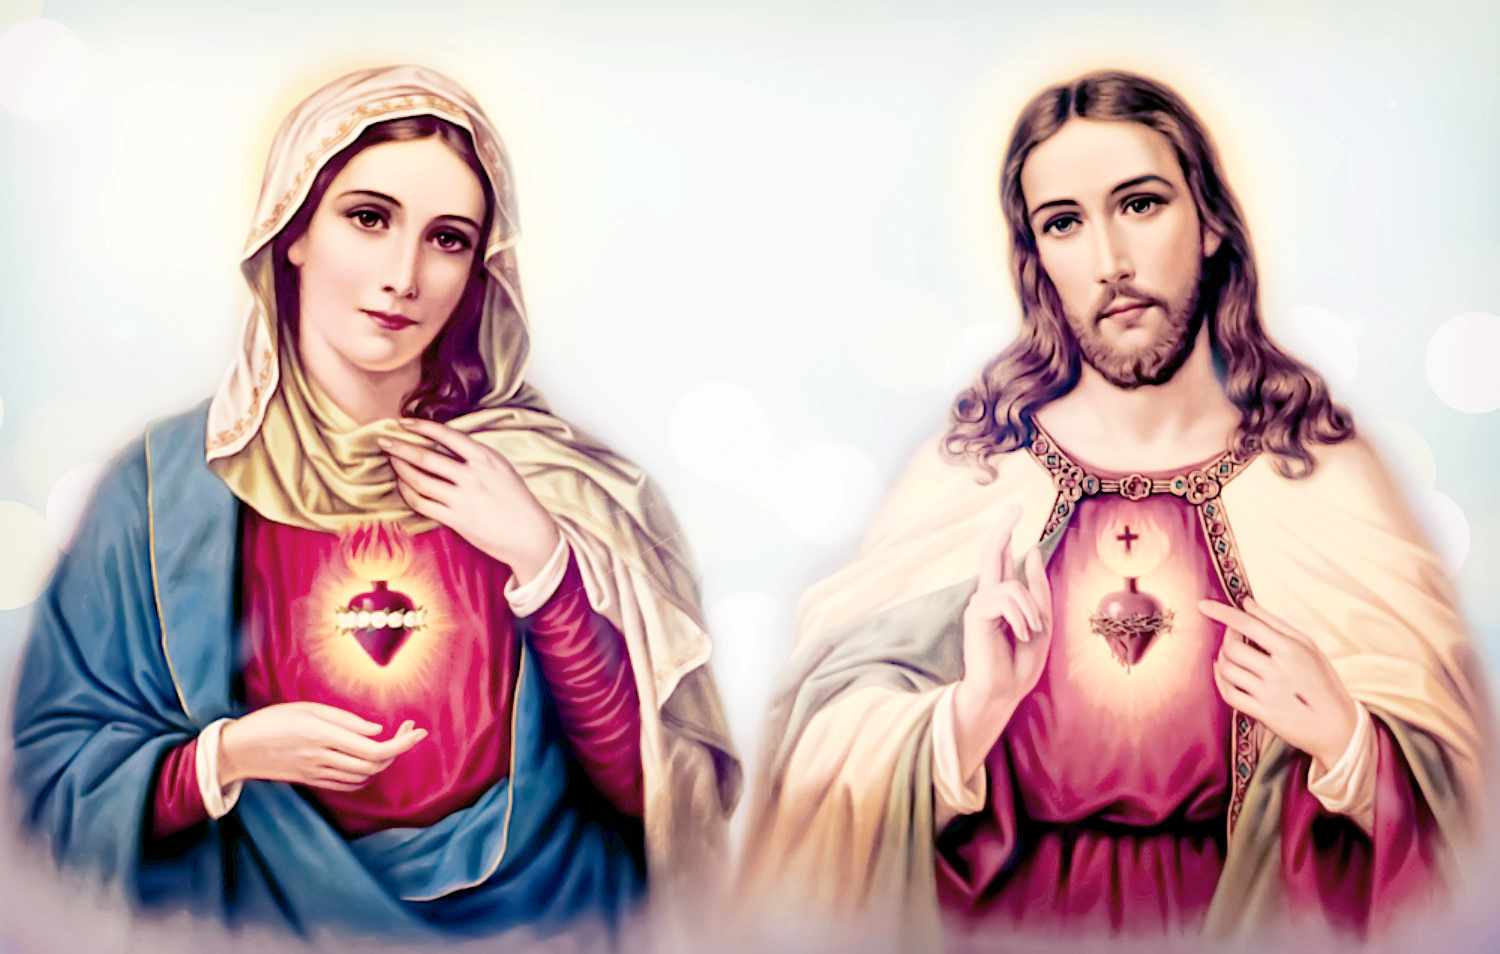 Heart Mary and Heart Jesus